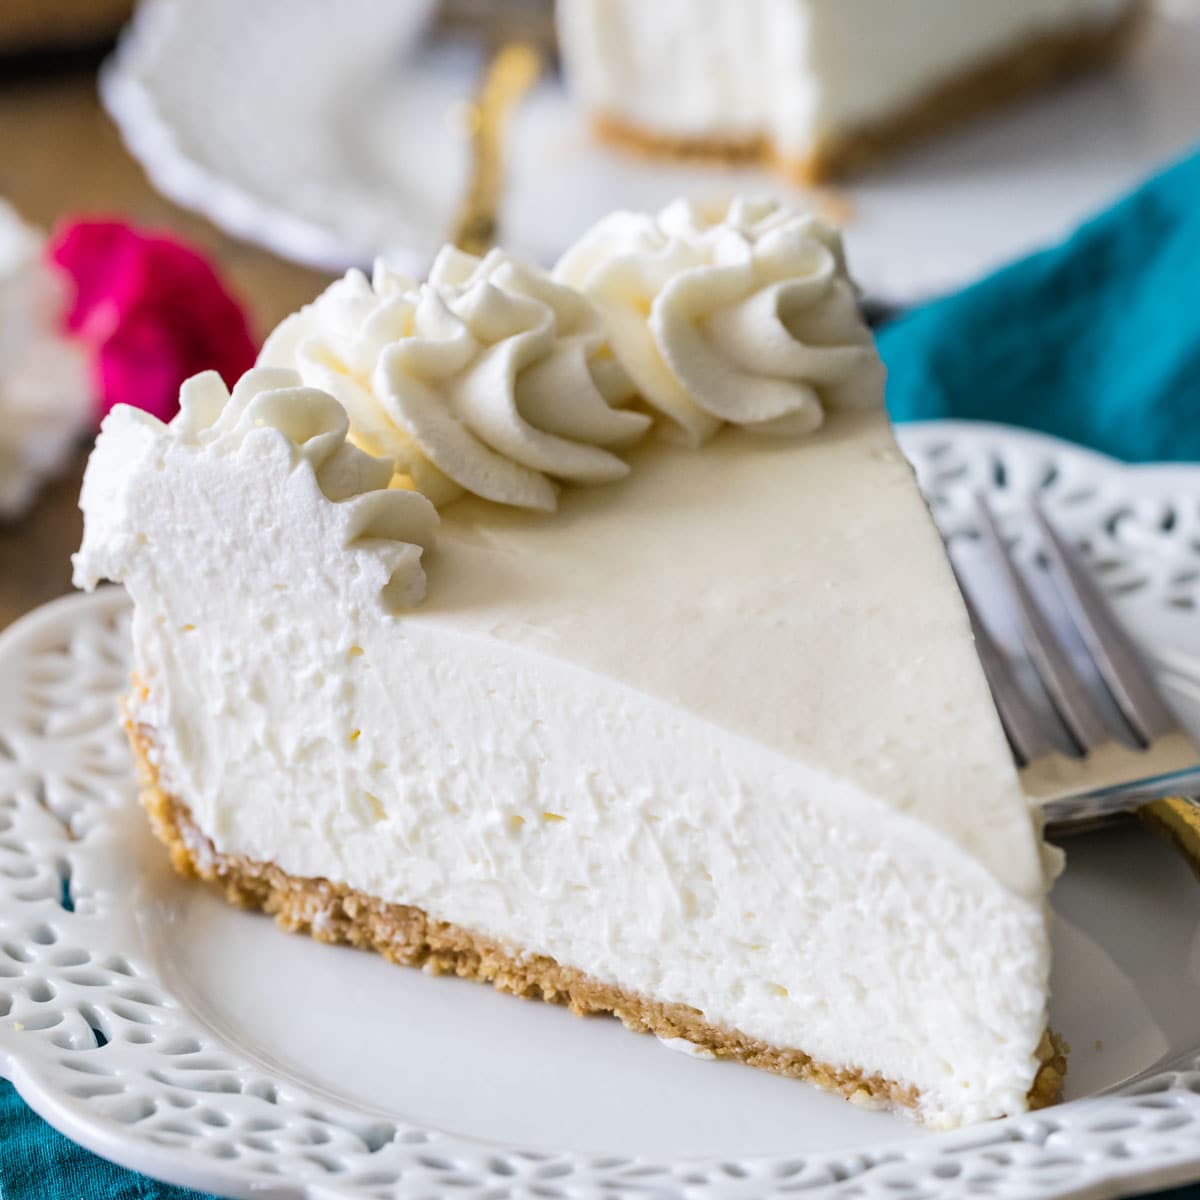 https://sugarspunrun.com/wp-content/uploads/2022/08/No-Bake-Cheesecake-1-of-1-2.jpg